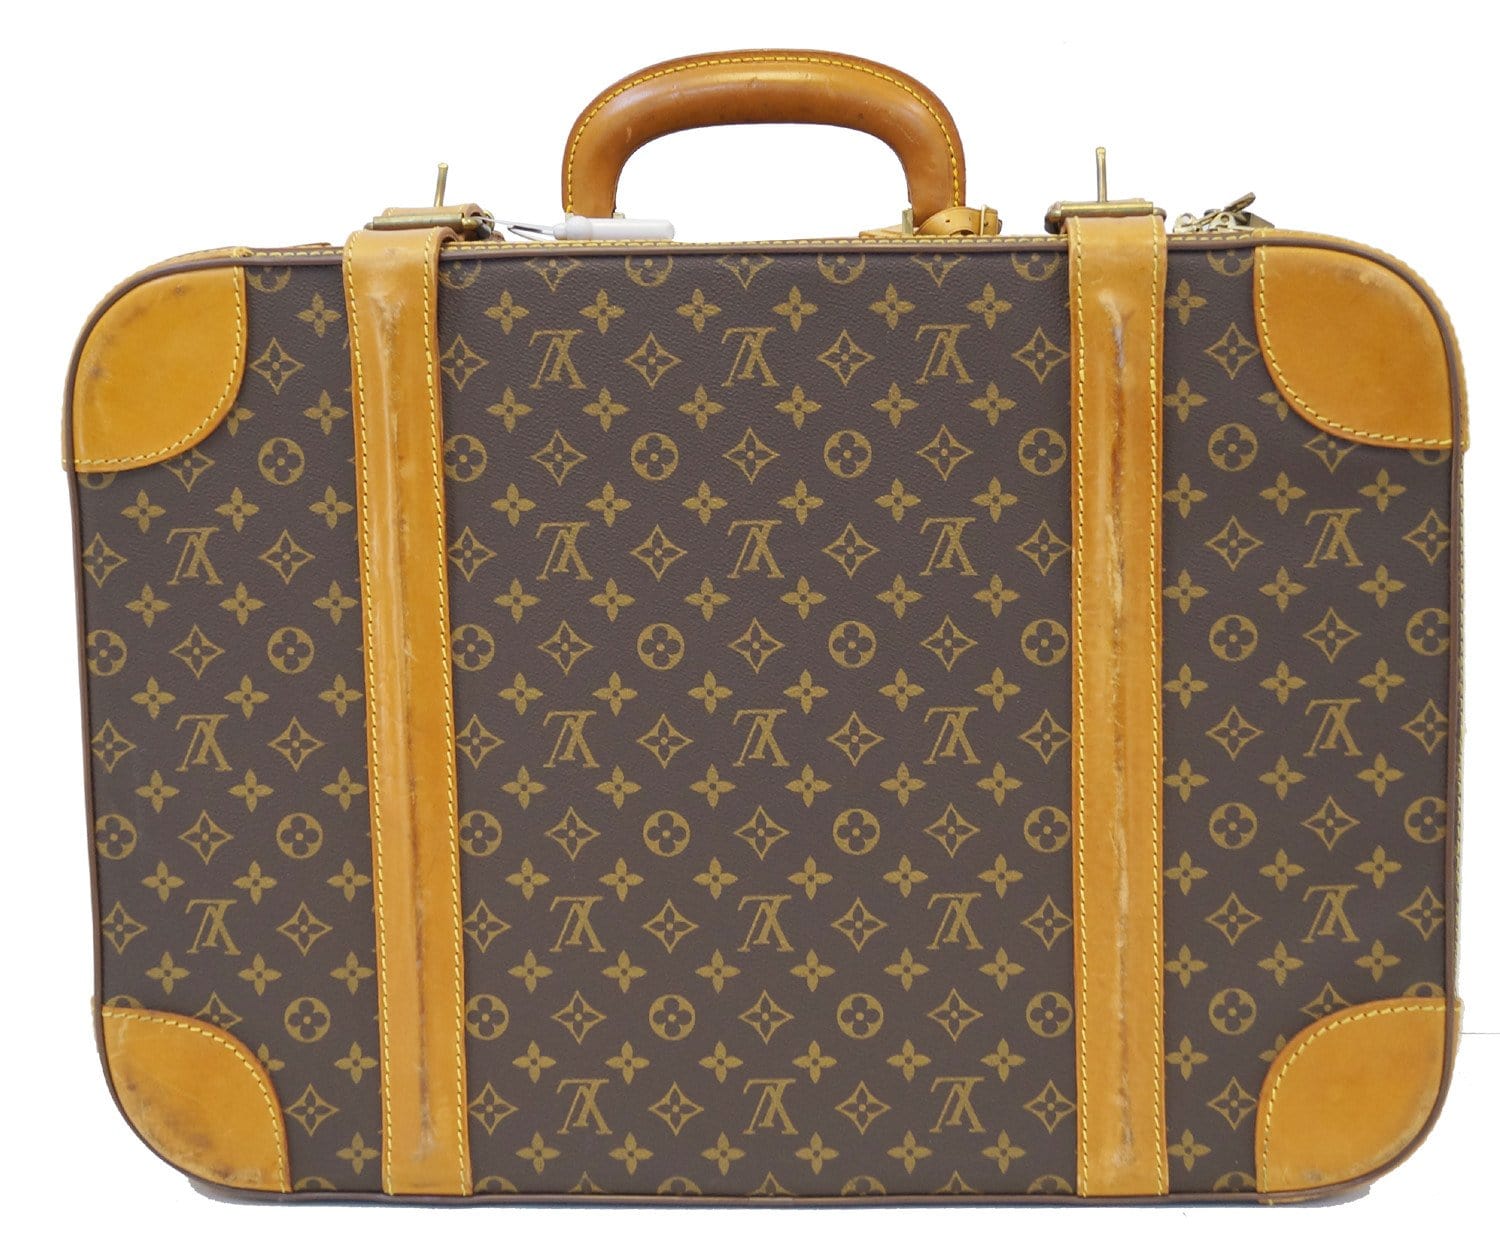 100 Legendary Trunks from Louis Vuitton - 66239  Louis vuitton luggage, Louis  vuitton trunk, Louis vuitton suitcase